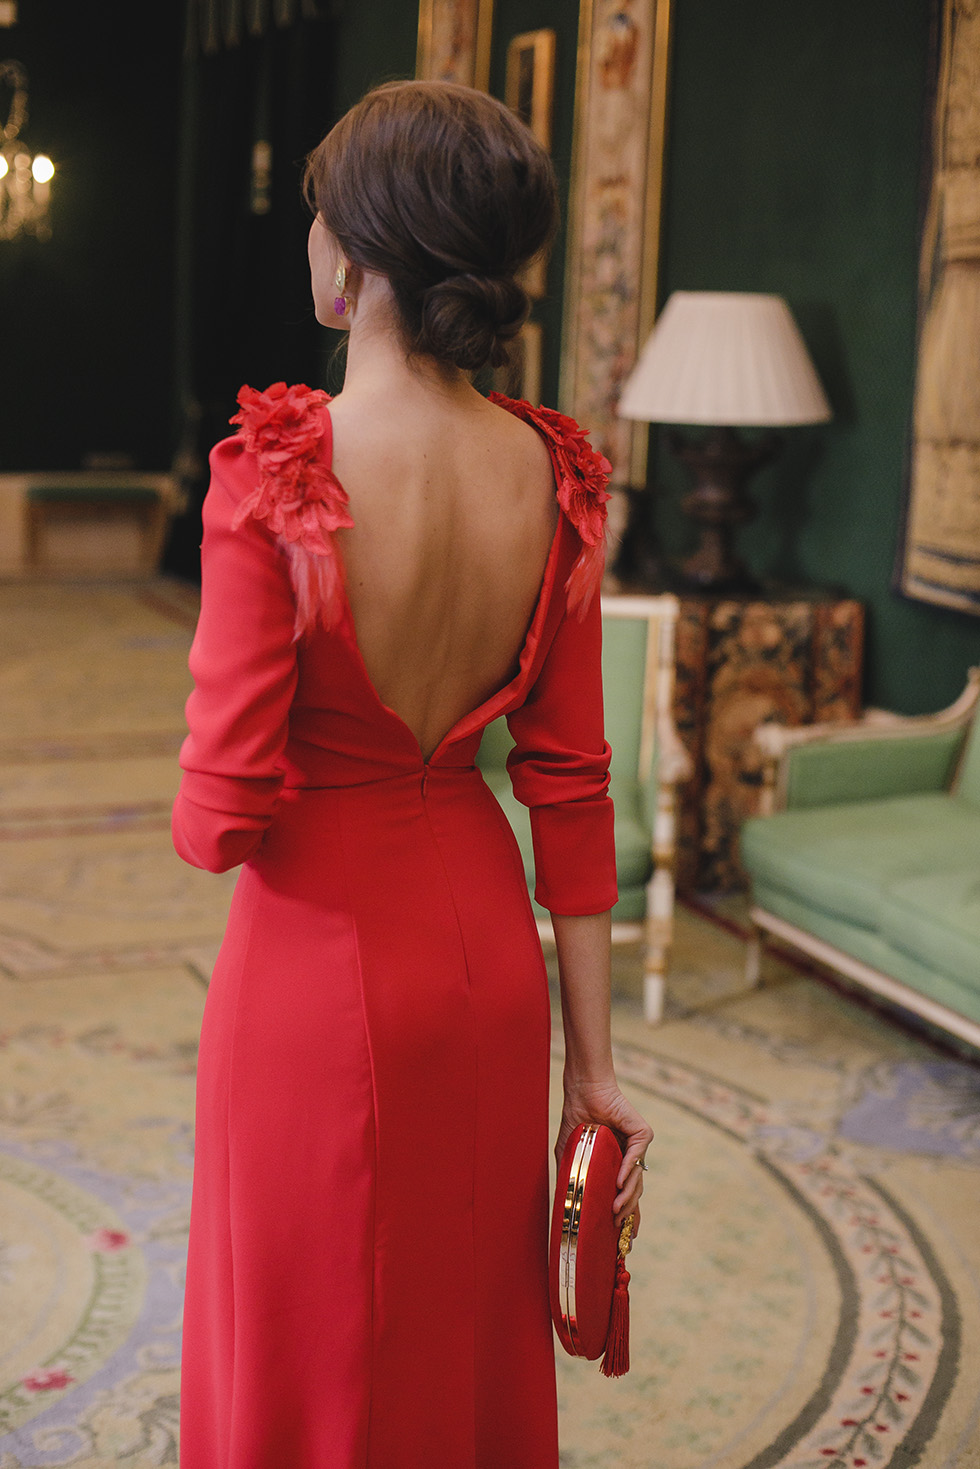 Look invitada boda noche vestido rojo largo espalda